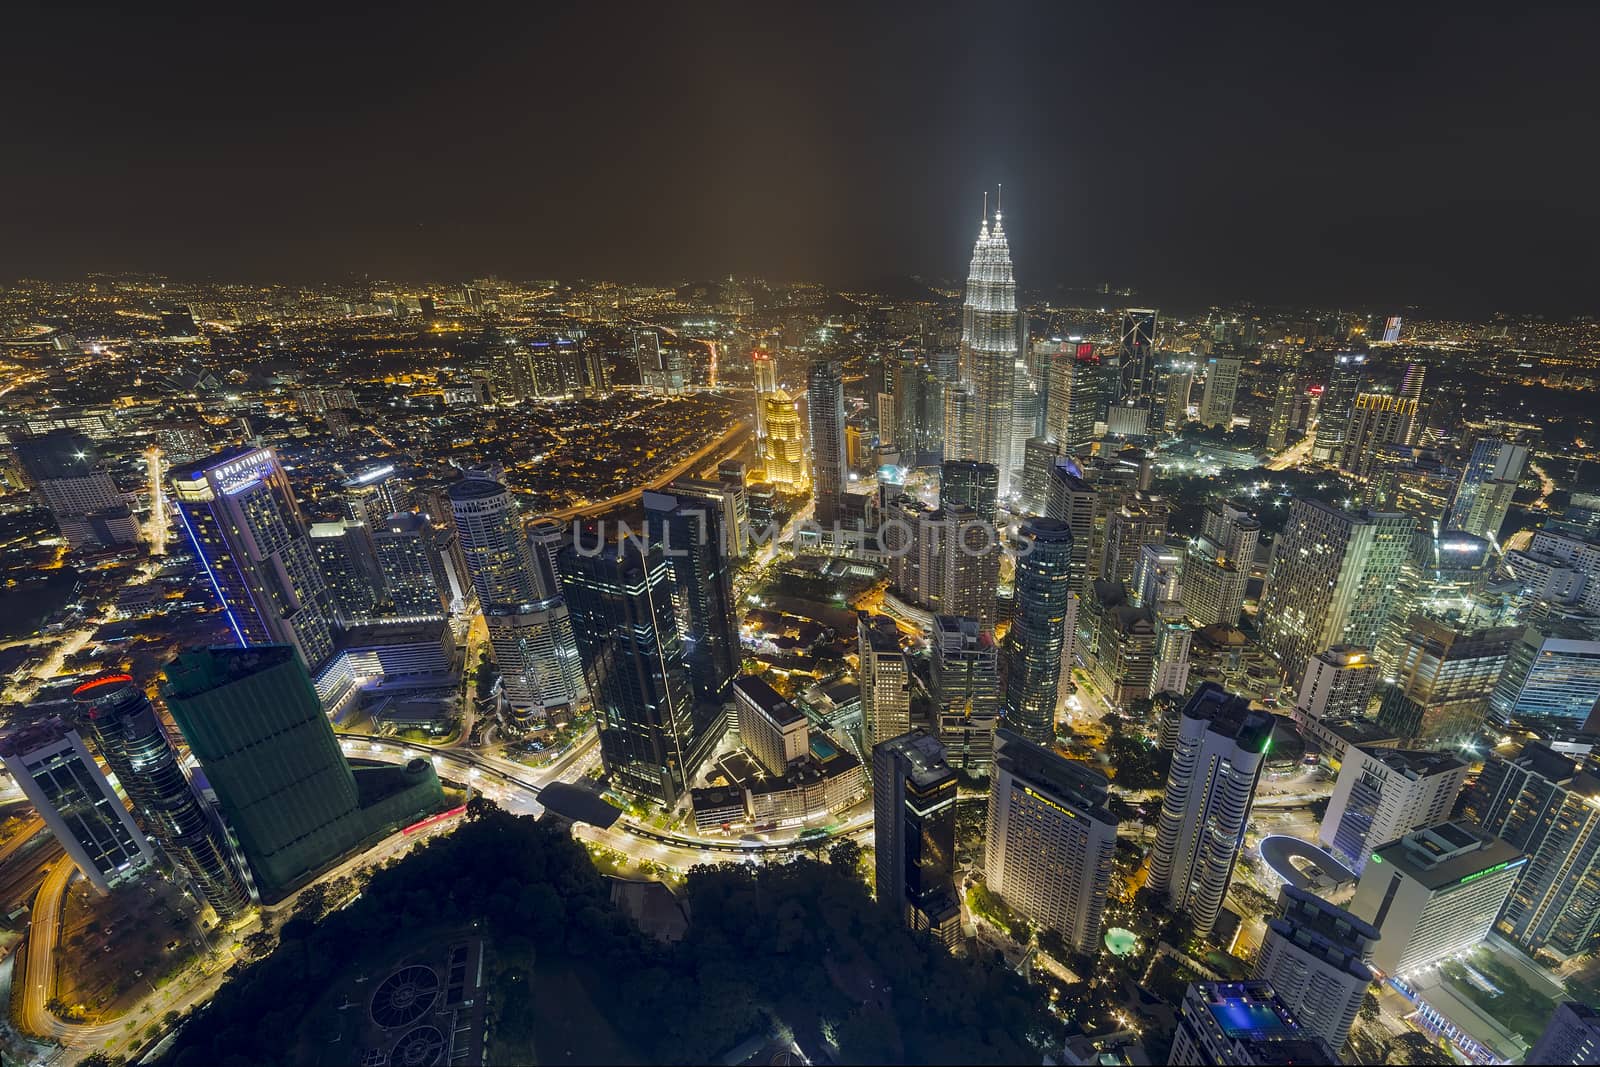 Kuala Lumpur Cityscape at Night by Davidgn